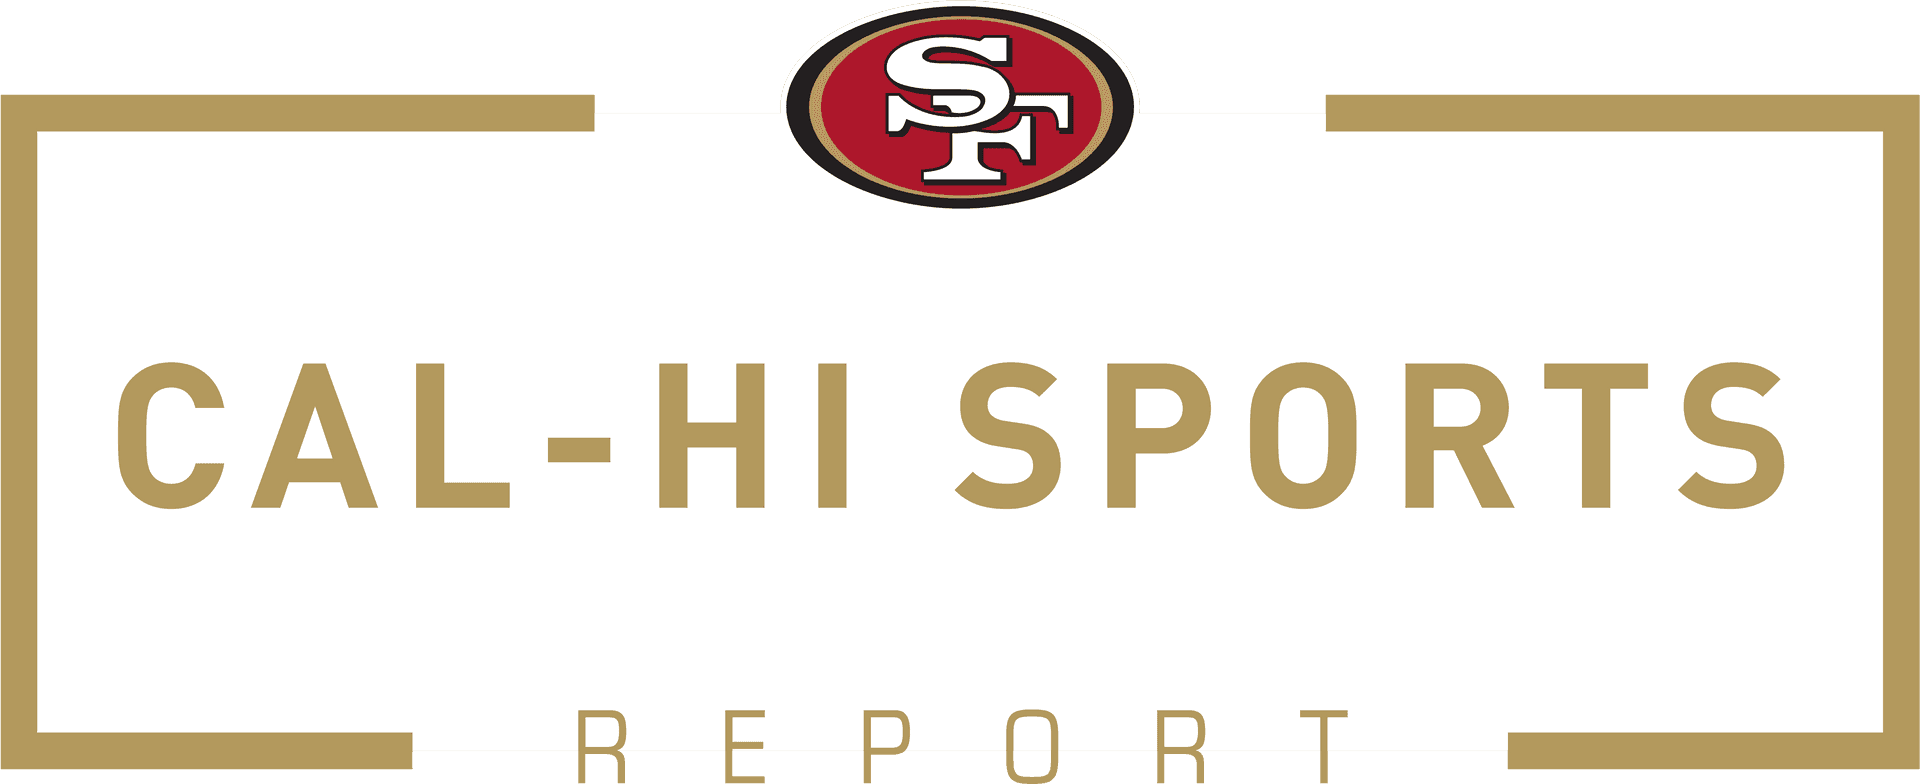 San Francisco49ers Cal Hi Sports Report Logo PNG